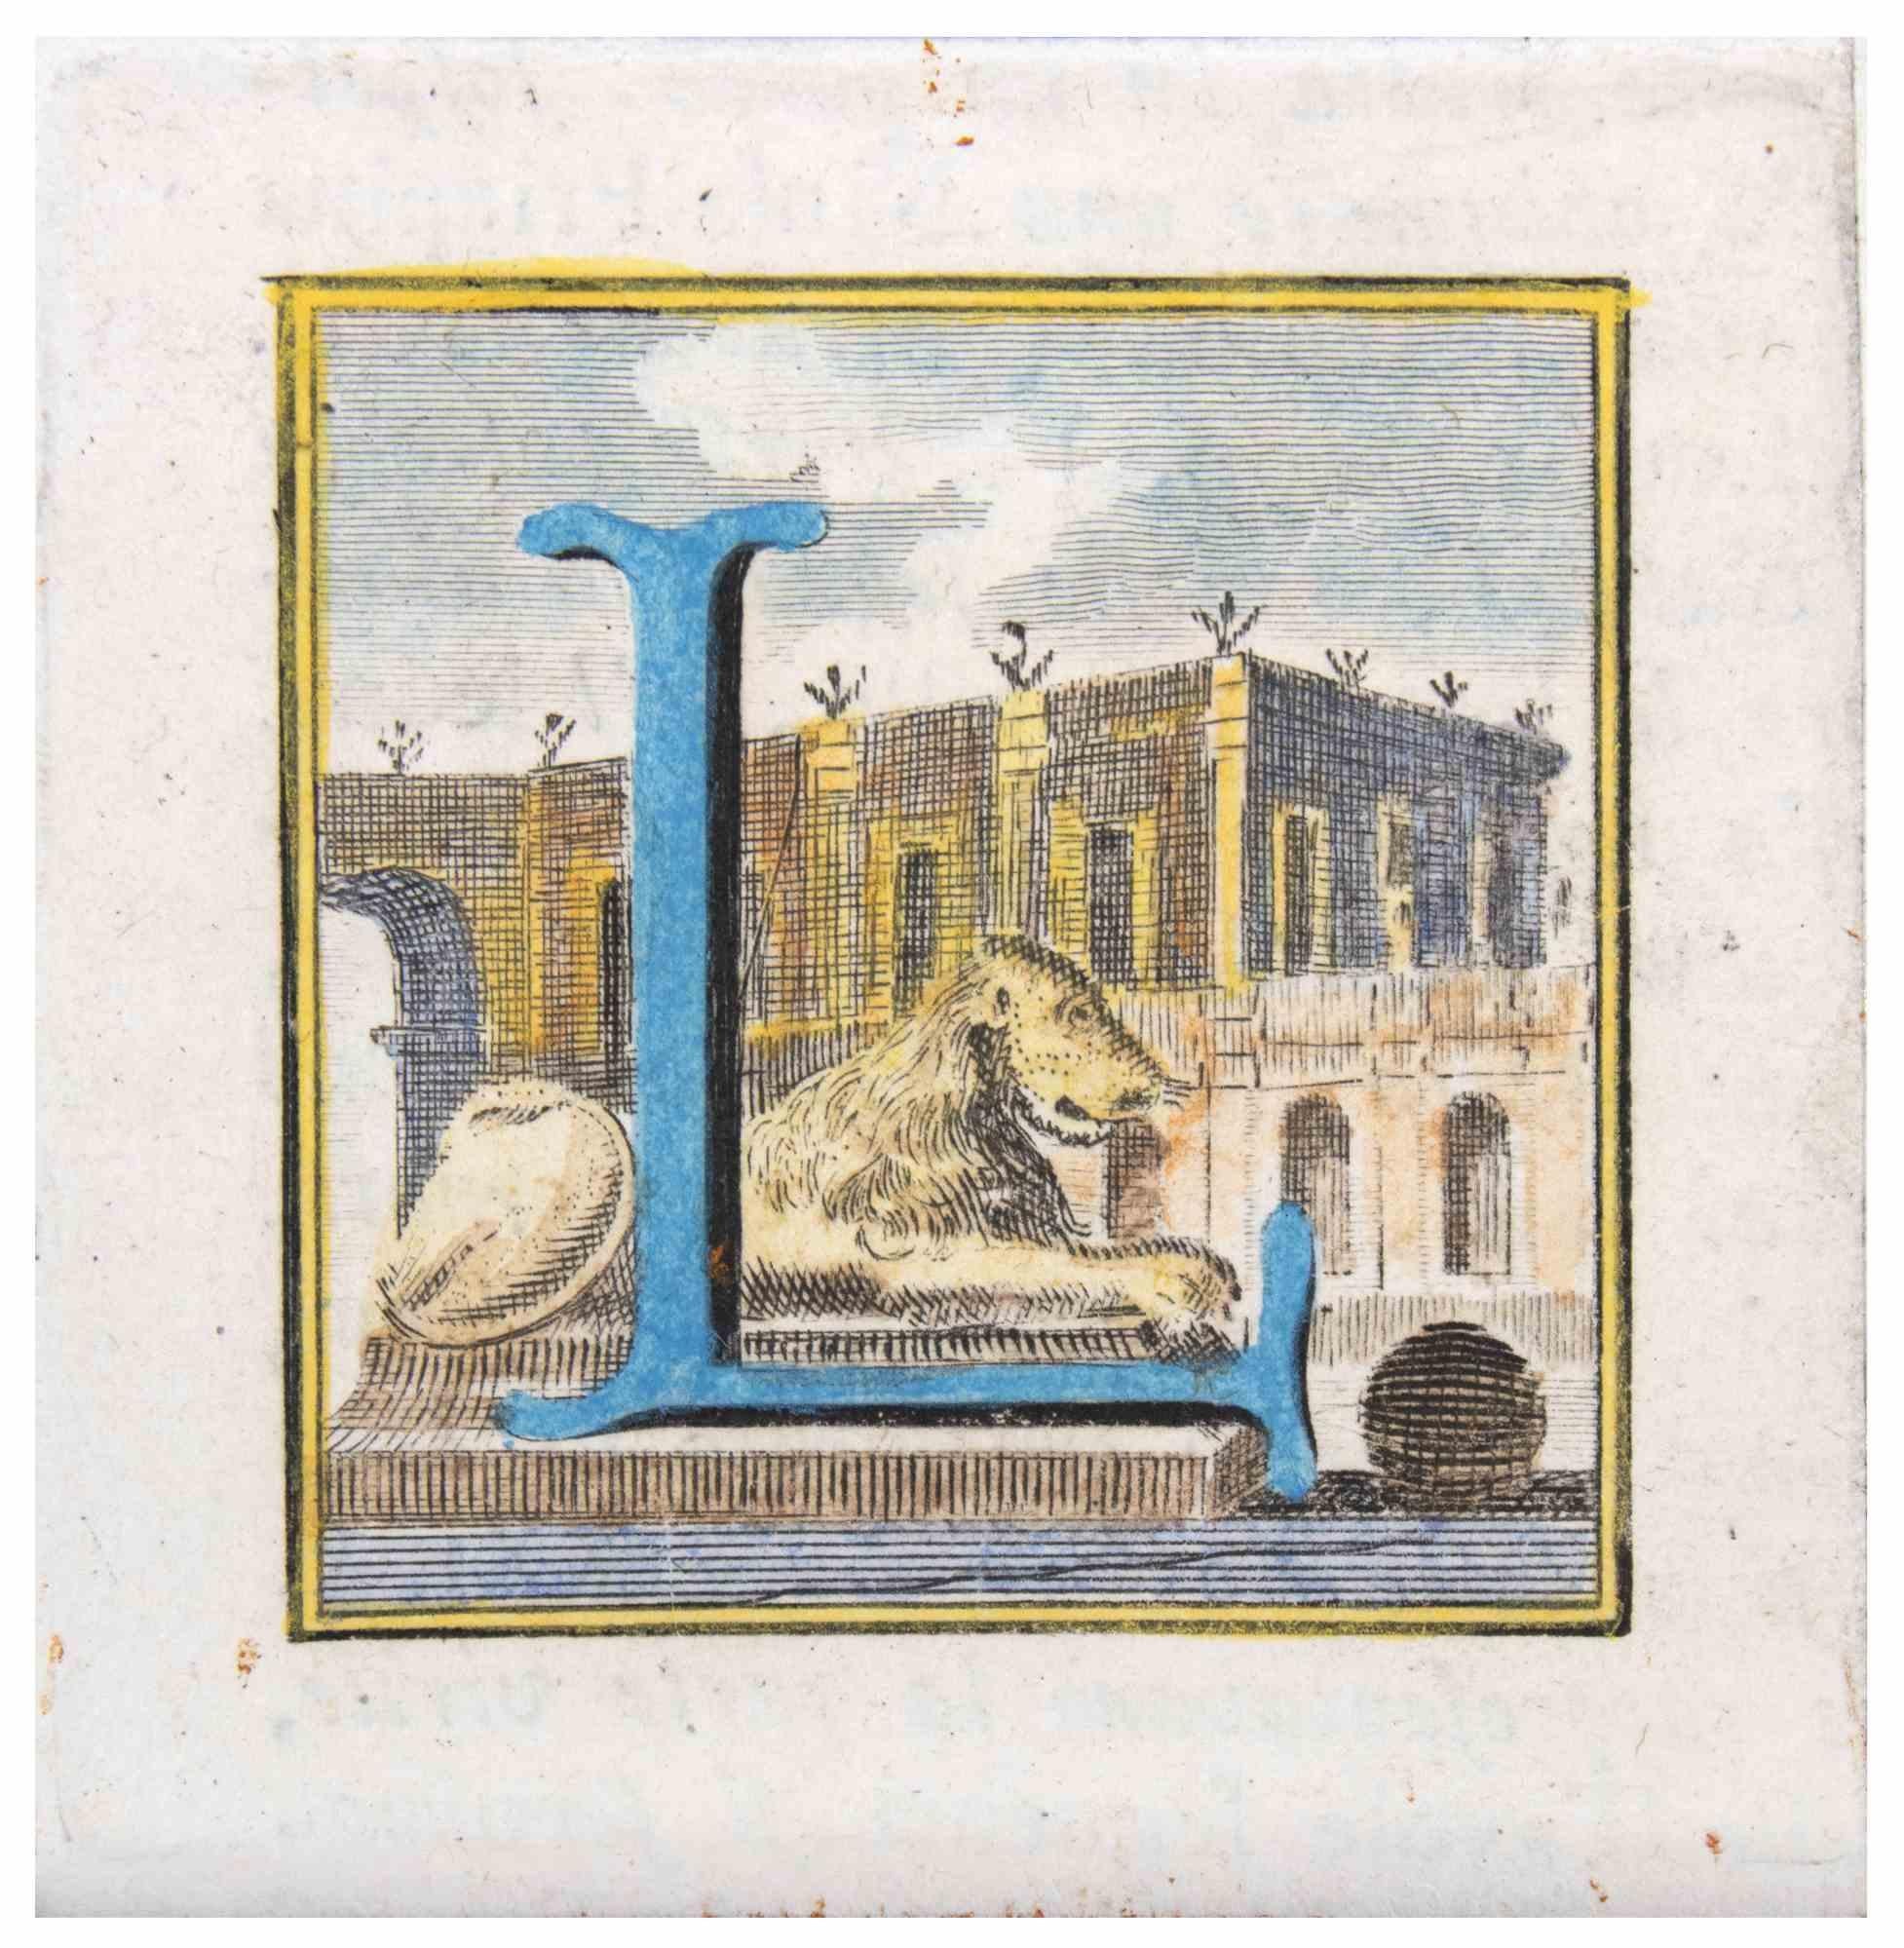 Der Buchstabe L ist eine Radierung von Luigi Vanvitelli, einem Künstler des 18. Jahrhunderts.

Guter Zustand.

Die Radierung gehört zu der Druckserie "Antiquities of Herculaneum Exposed" (Originaltitel: "Le Antichità di Ercolano Esposte"), einem